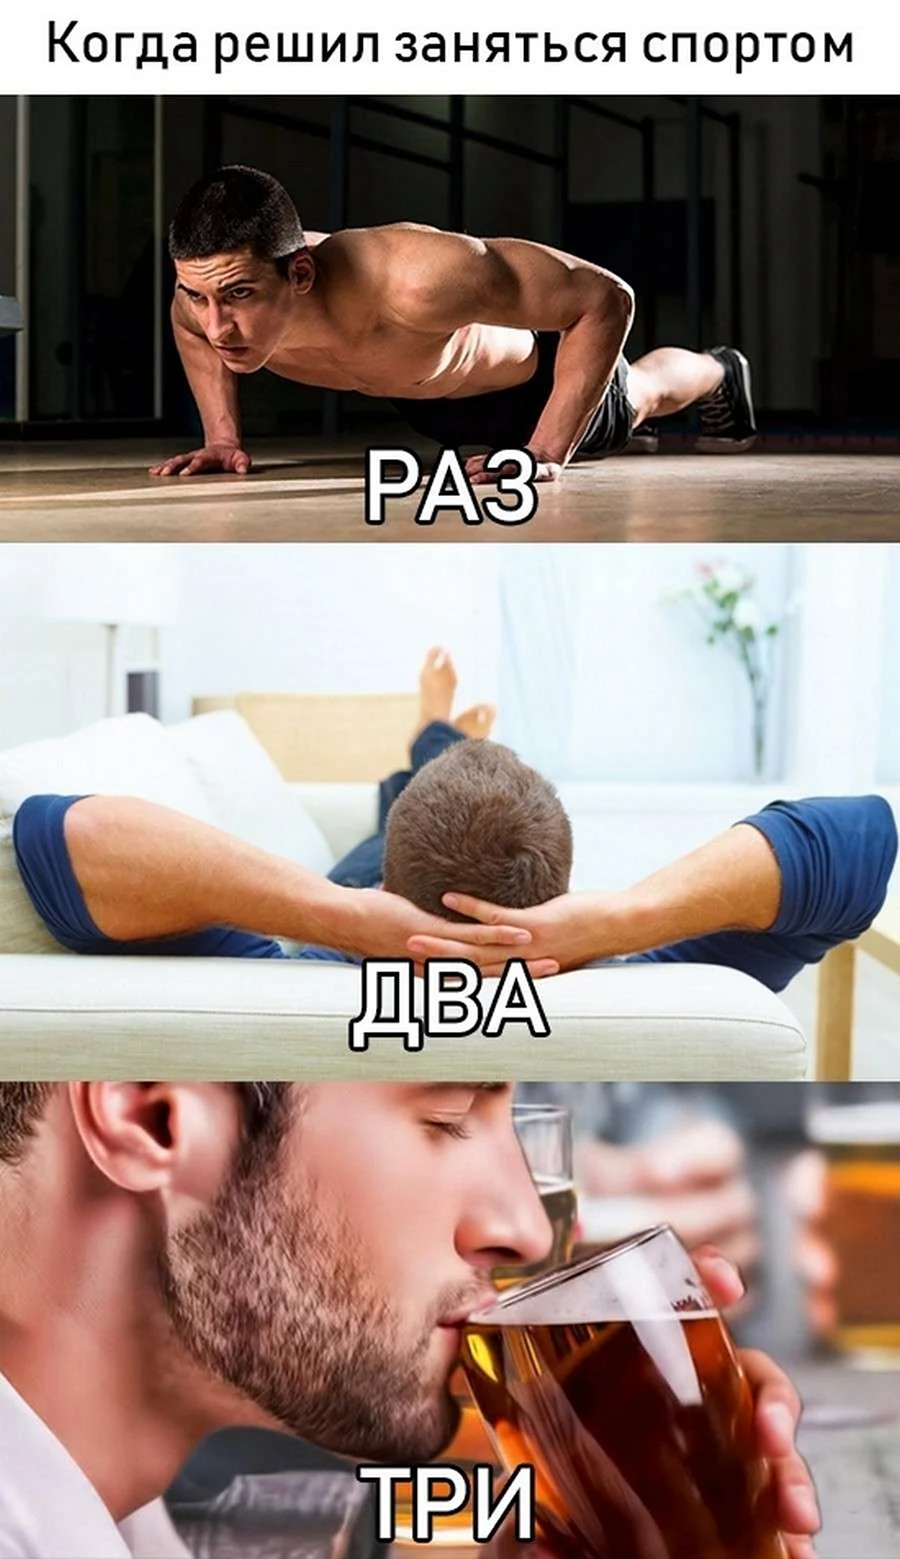 Мемы про спорт